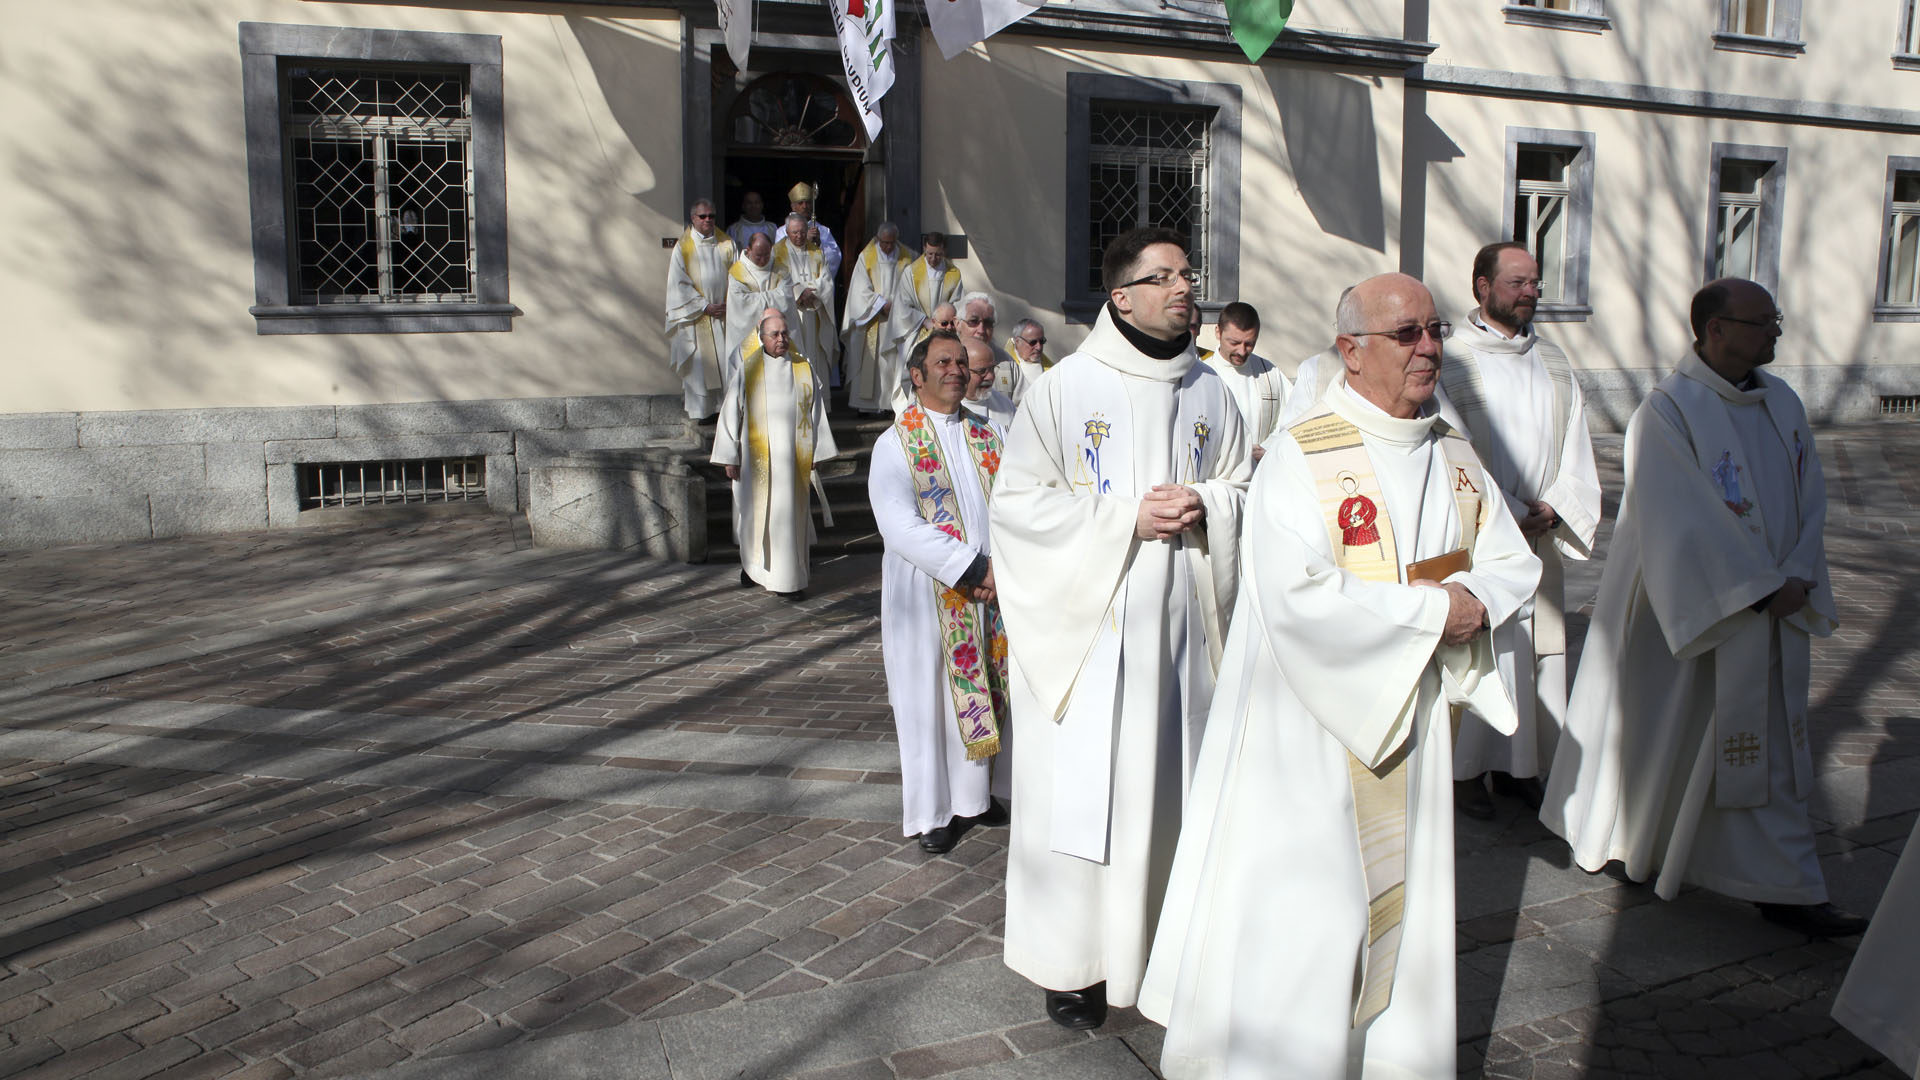 Les nominations du diocèse de Sion entreront en vigueur le 1er septembre 2017. (Photo: B. Hallet)